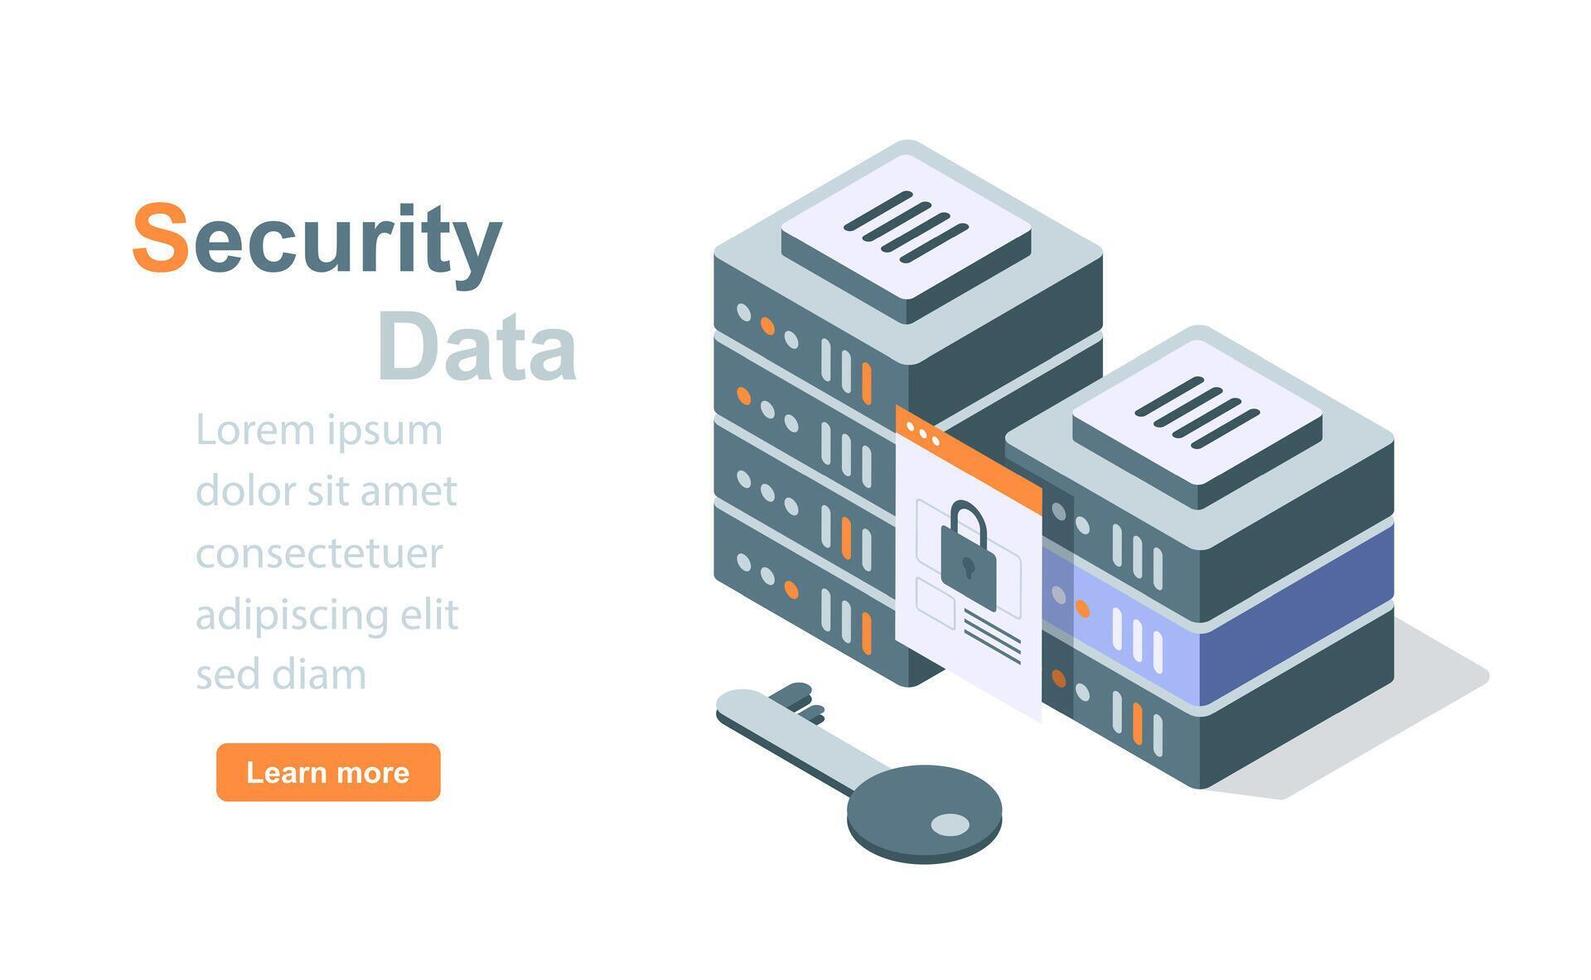 seguridad datos servidor personal información proteccion ciberespacio privacidad, confidencial cuenta ciber contenido centro de datos archivo almacenamiento vector